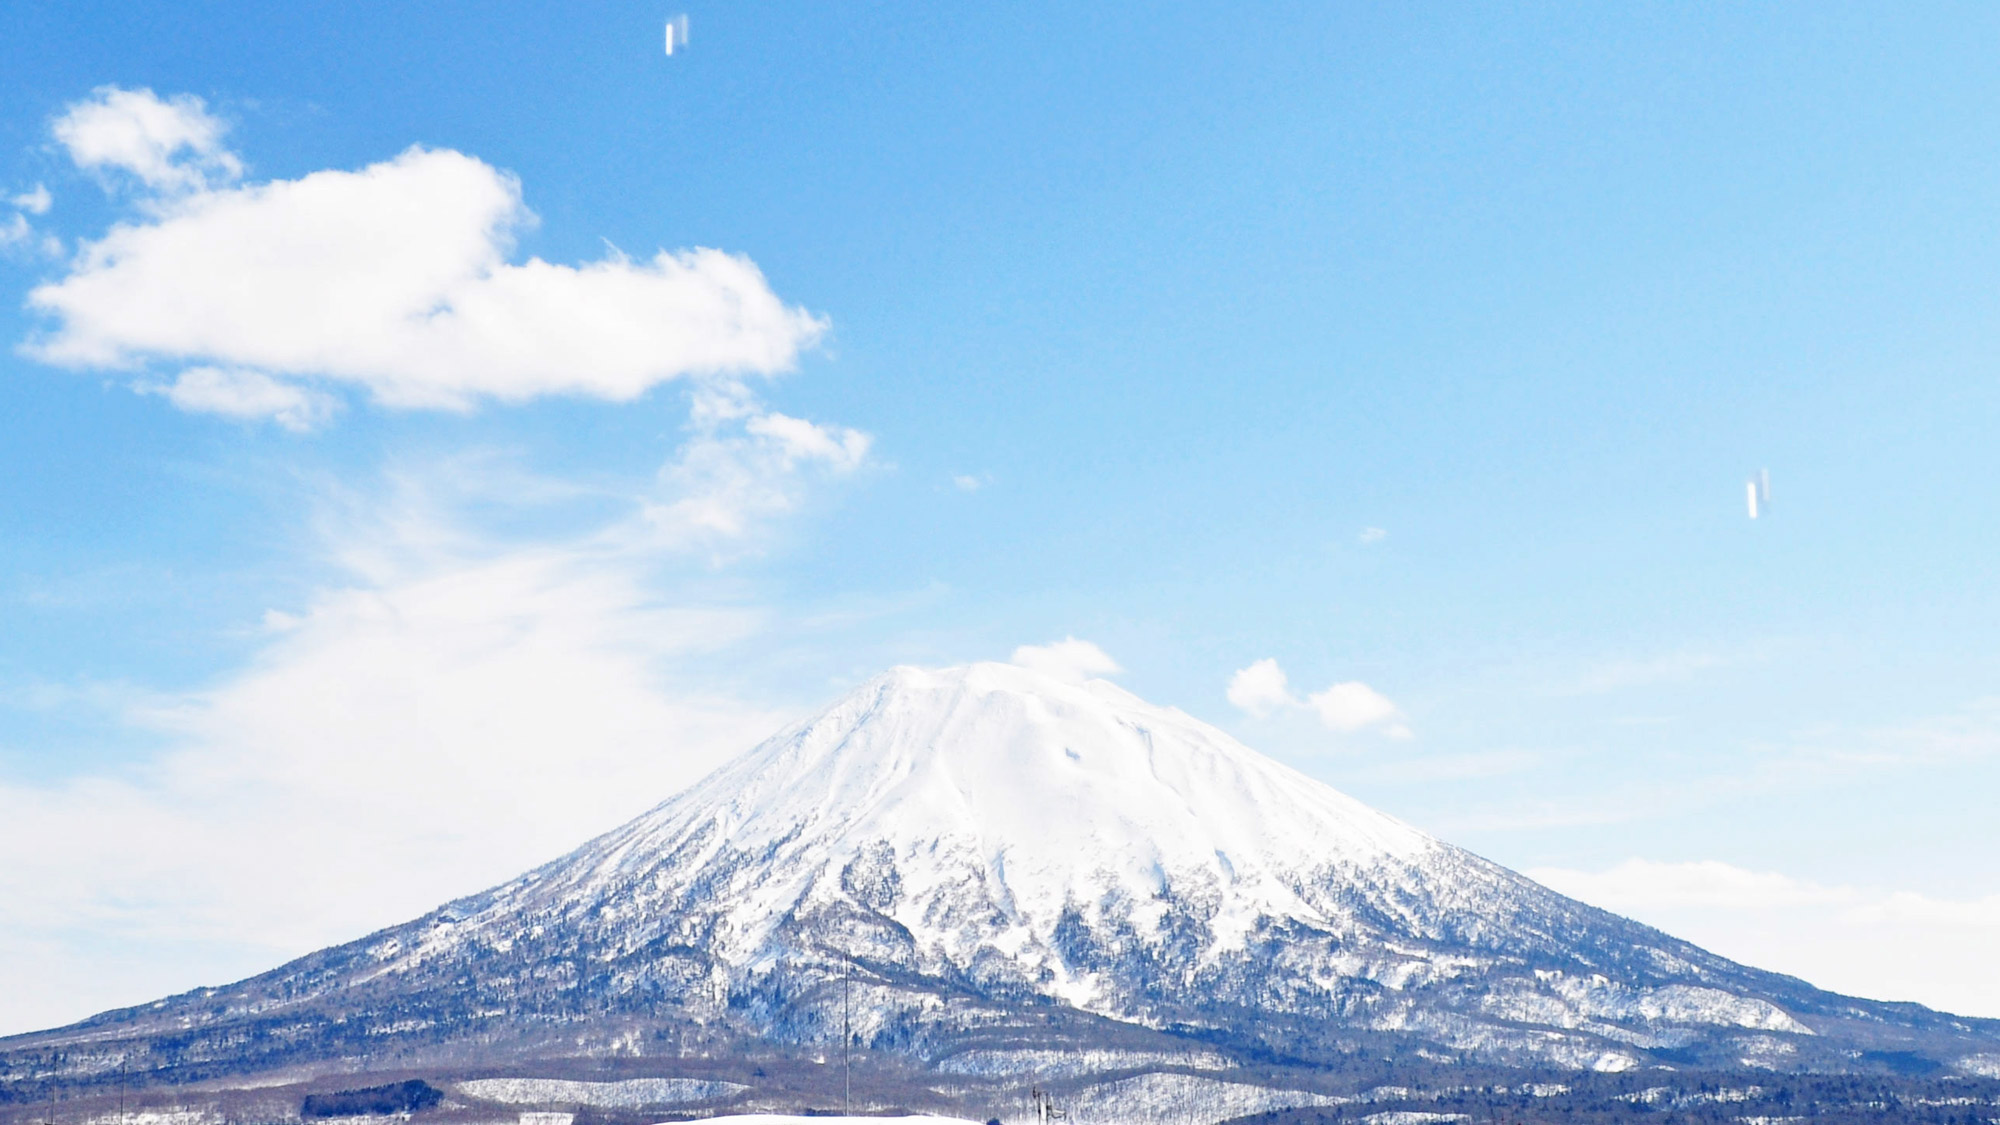 【羊蹄山】晴れた日の空の青さと雪の白さのコントラストが絶景です。